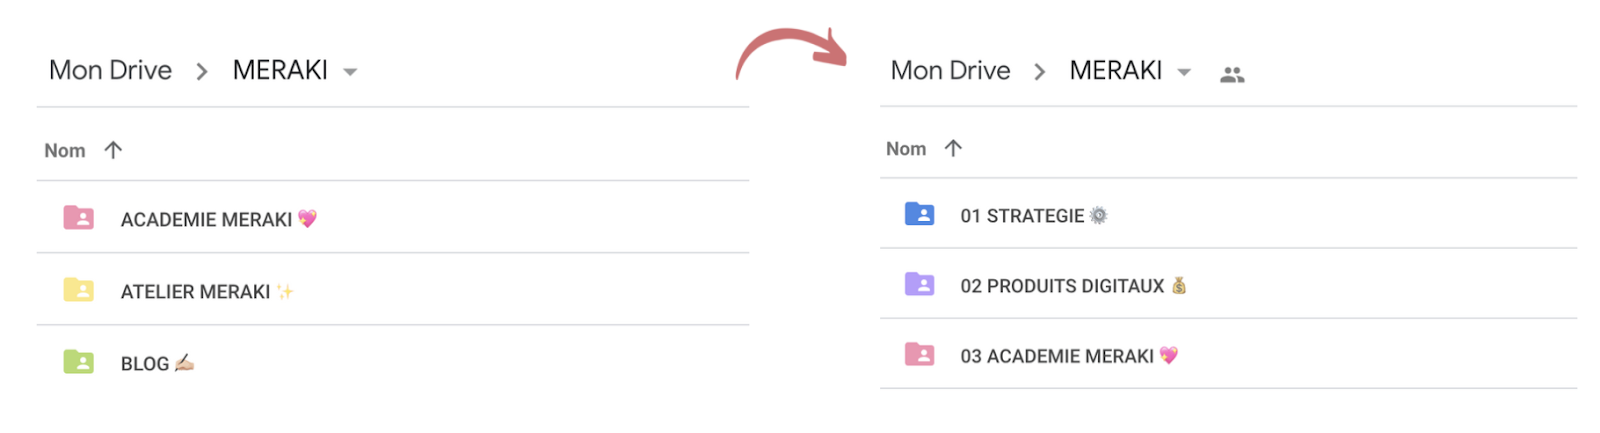 Trier par ordre priorité sur Google Drive pour une meilleure organisation